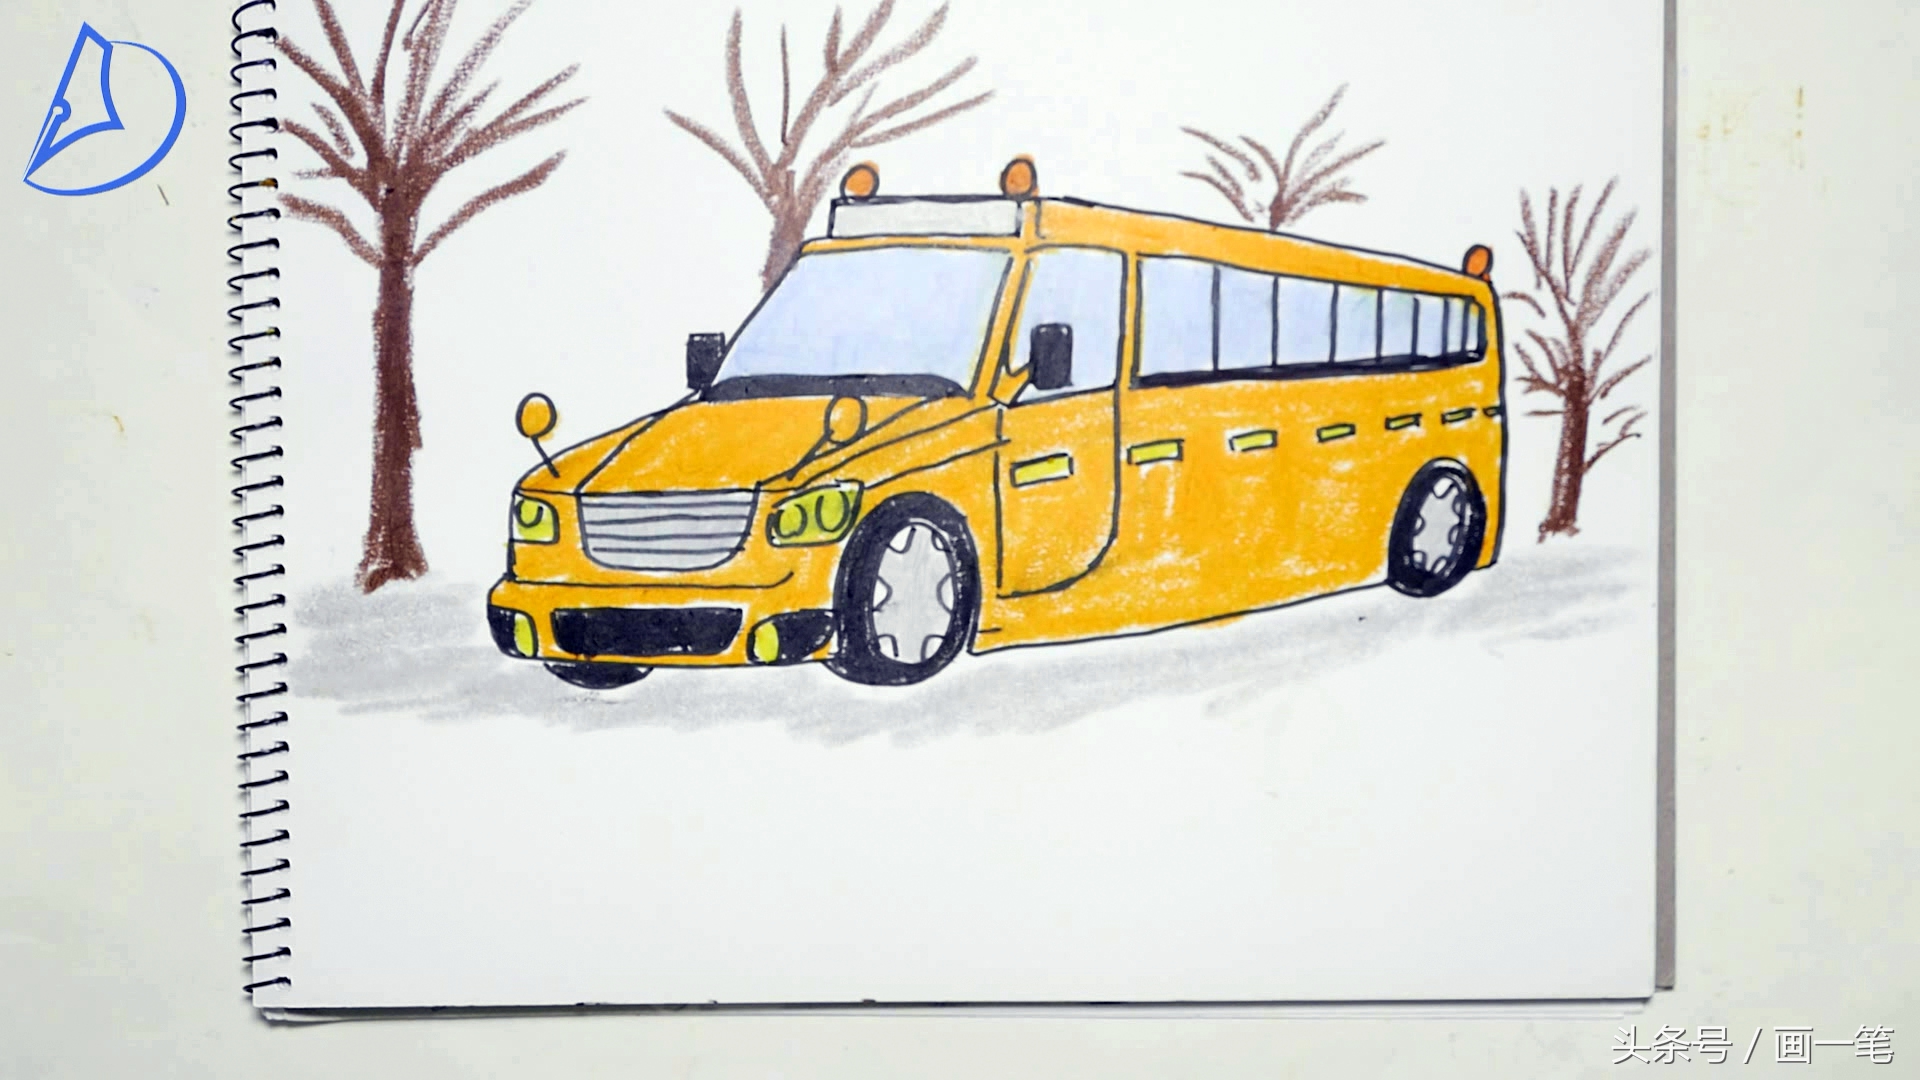 公共汽车简笔画涂色图片